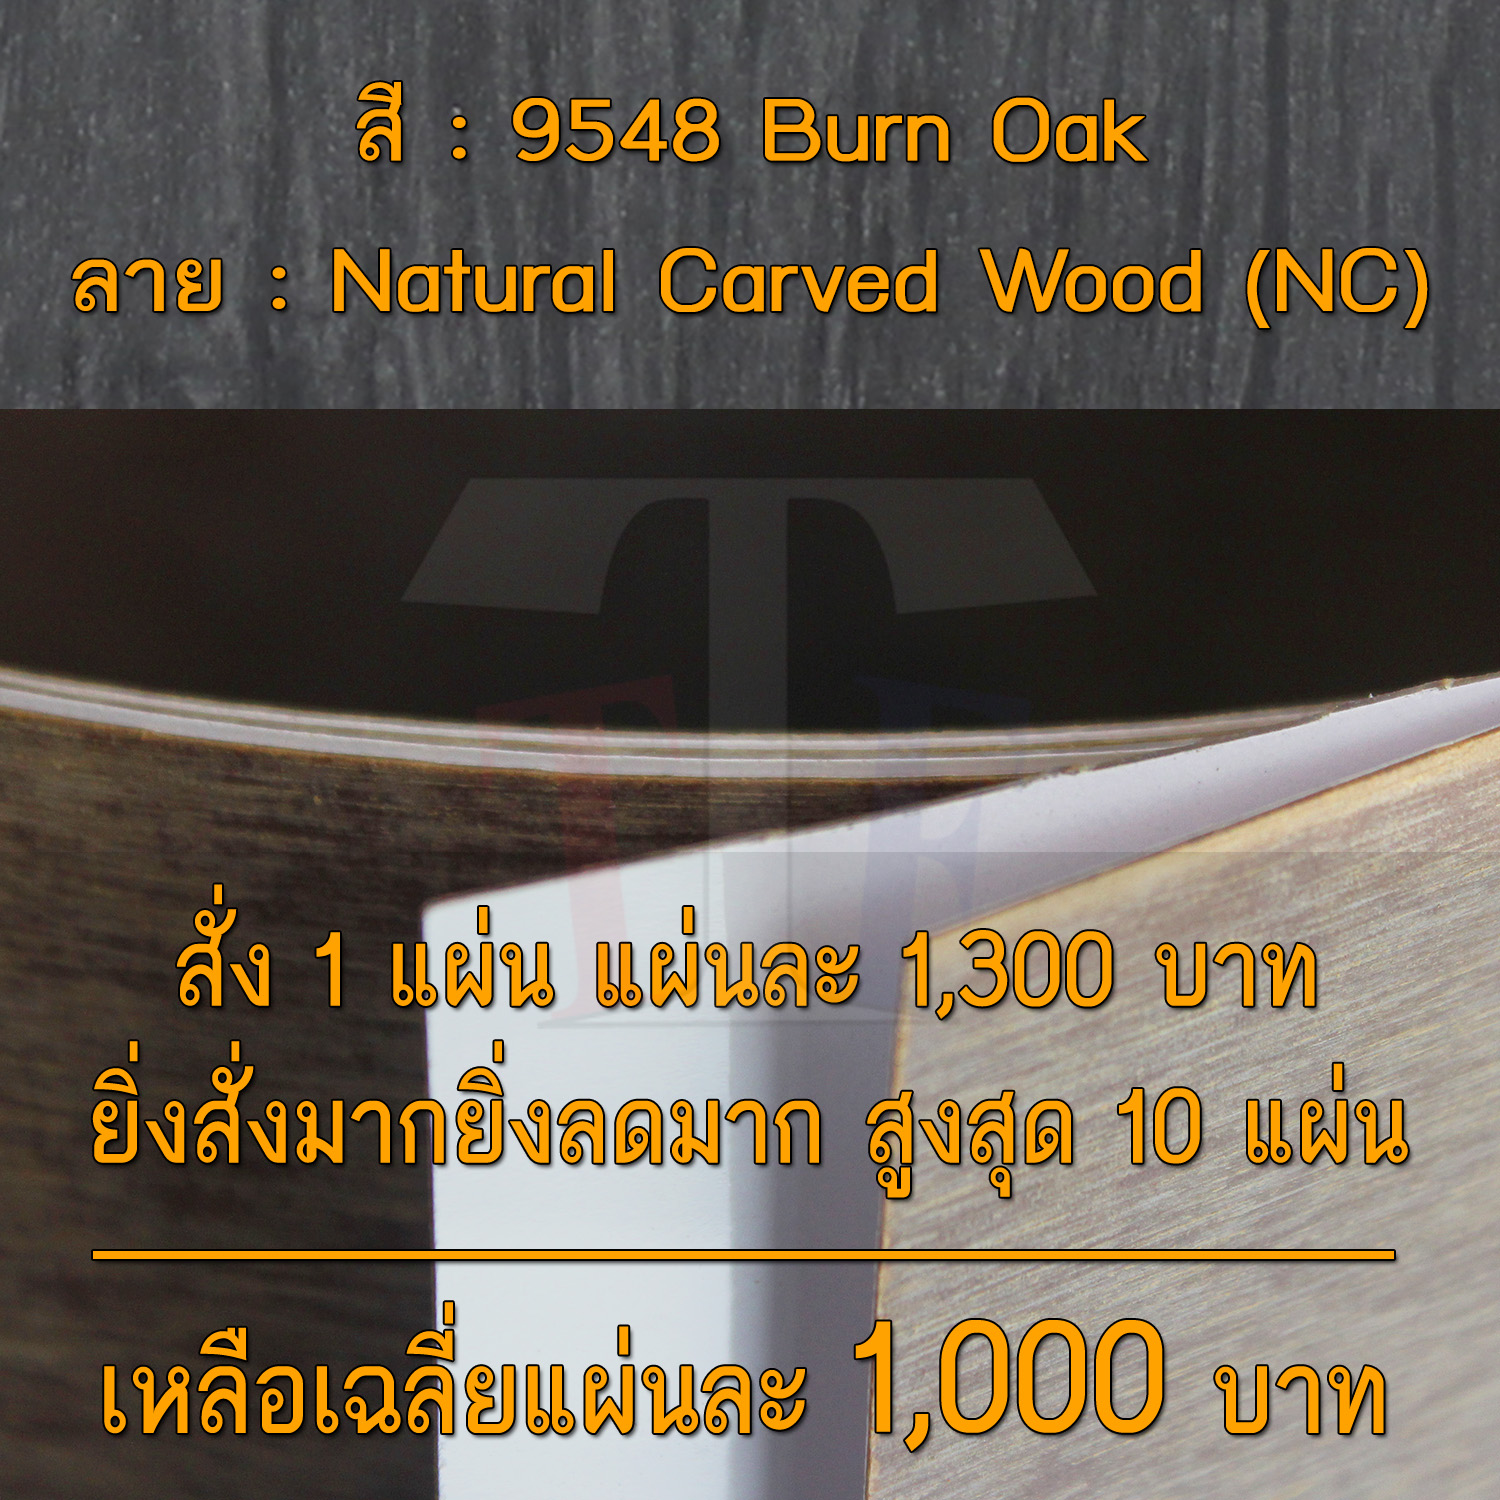 แผ่นโฟเมก้า แผ่นลามิเนต ยี่ห้อ TD Board ลายไม้โอ๊ค รหัส 9548 Burn Oak พื้นผิวลาย Natural Carved Wood (NC) ขนาด 1220 x 2440 มม. หนา 0.70 มม. ใช้สำหรับงานตกแต่งภายใน งานปิดผิวเฟอร์นิเจอร์ ผนัง และอื่นๆ เพื่อเพิ่มความสวยงาม formica laminate 9548NC